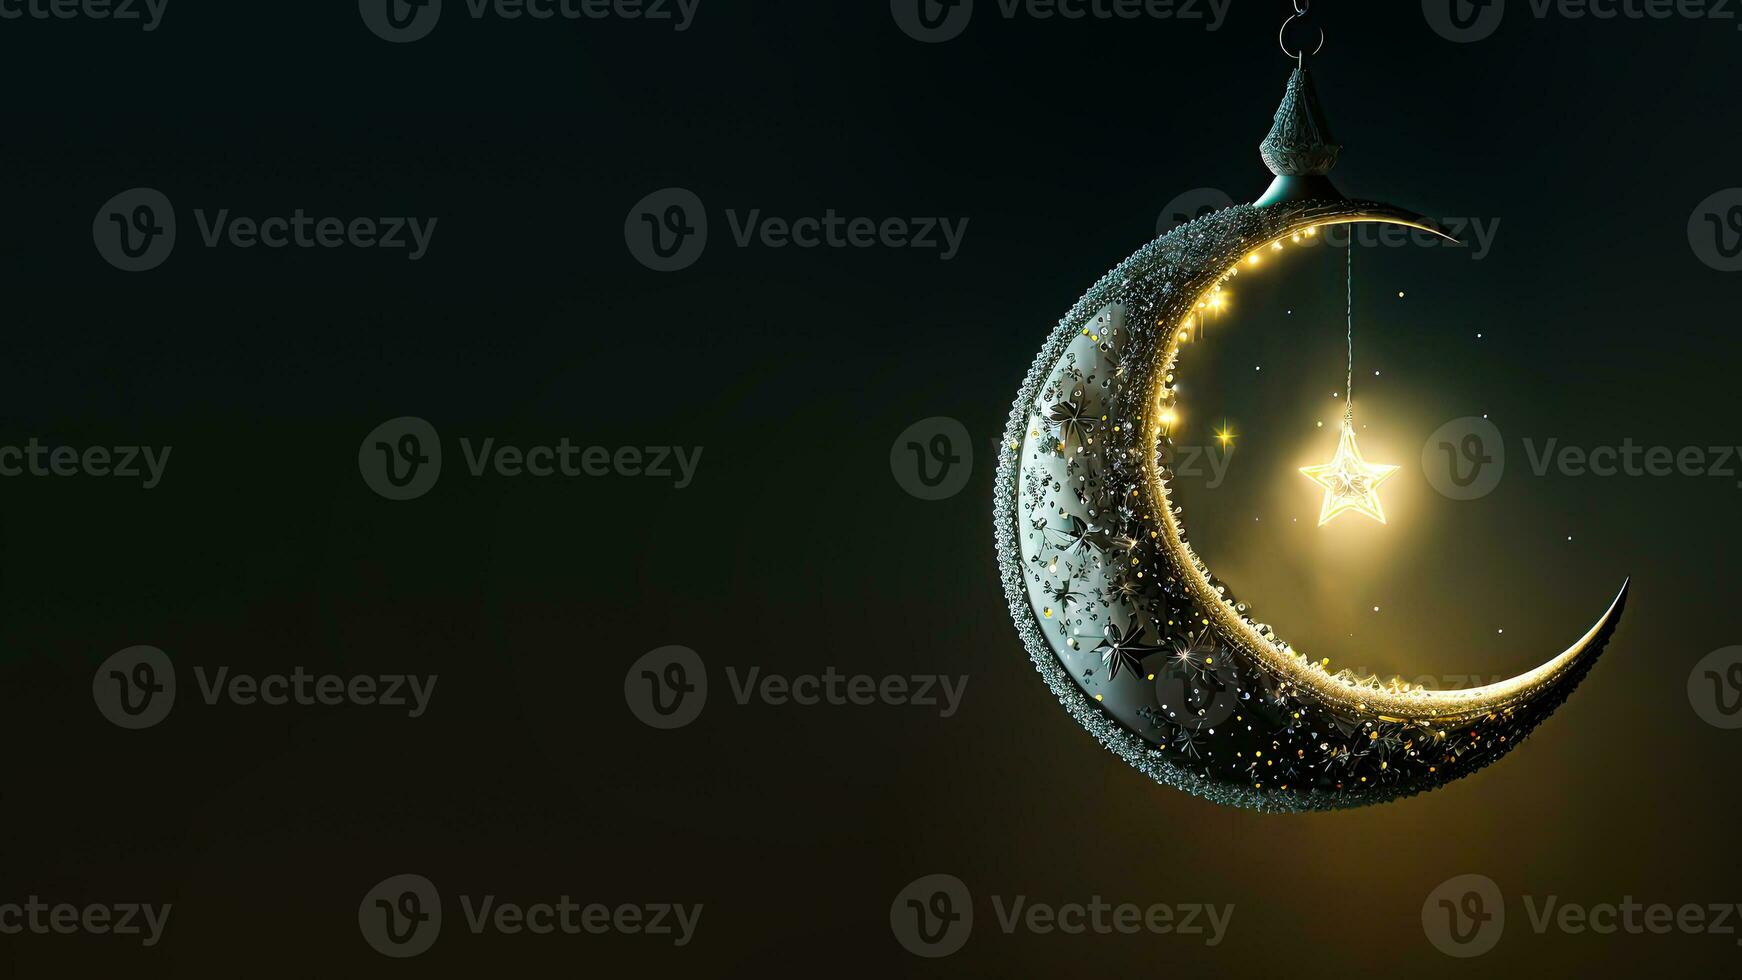 3d machen von hängend exquisit glänzend geschnitzt Mond mit Star auf dunkel Hintergrund. islamisch religiös Konzept. foto